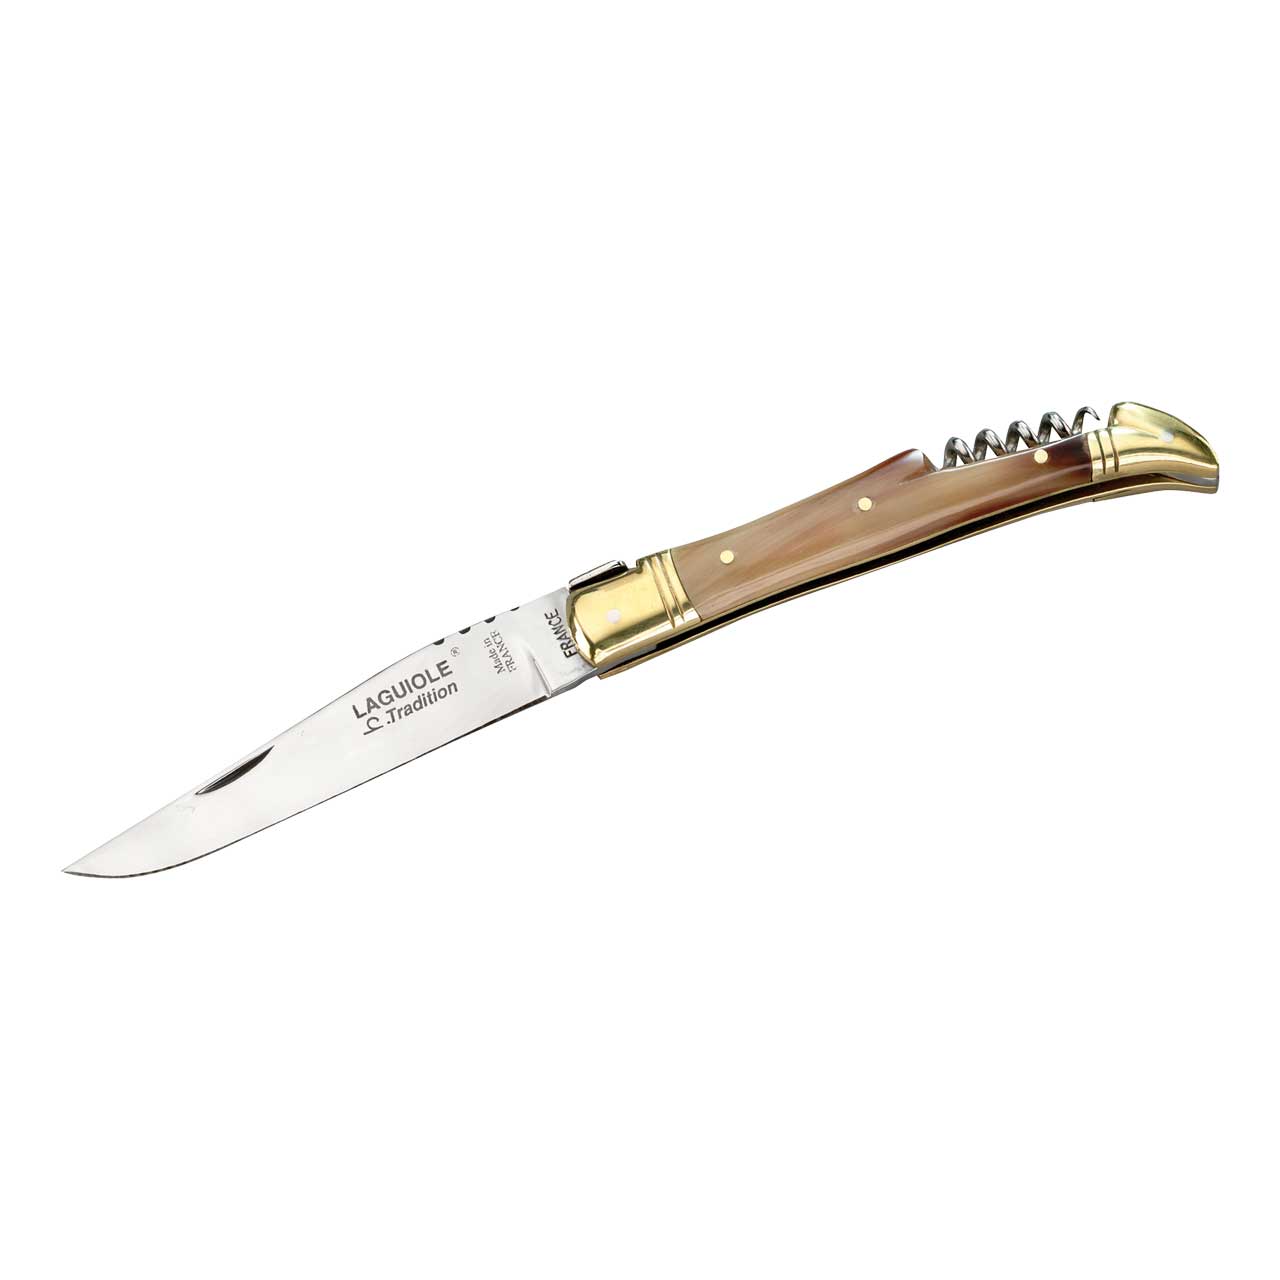 Laguiole-Messer, Sandvik-Stahl 12C27, Schalen aus Hornspitze, Messingbacken